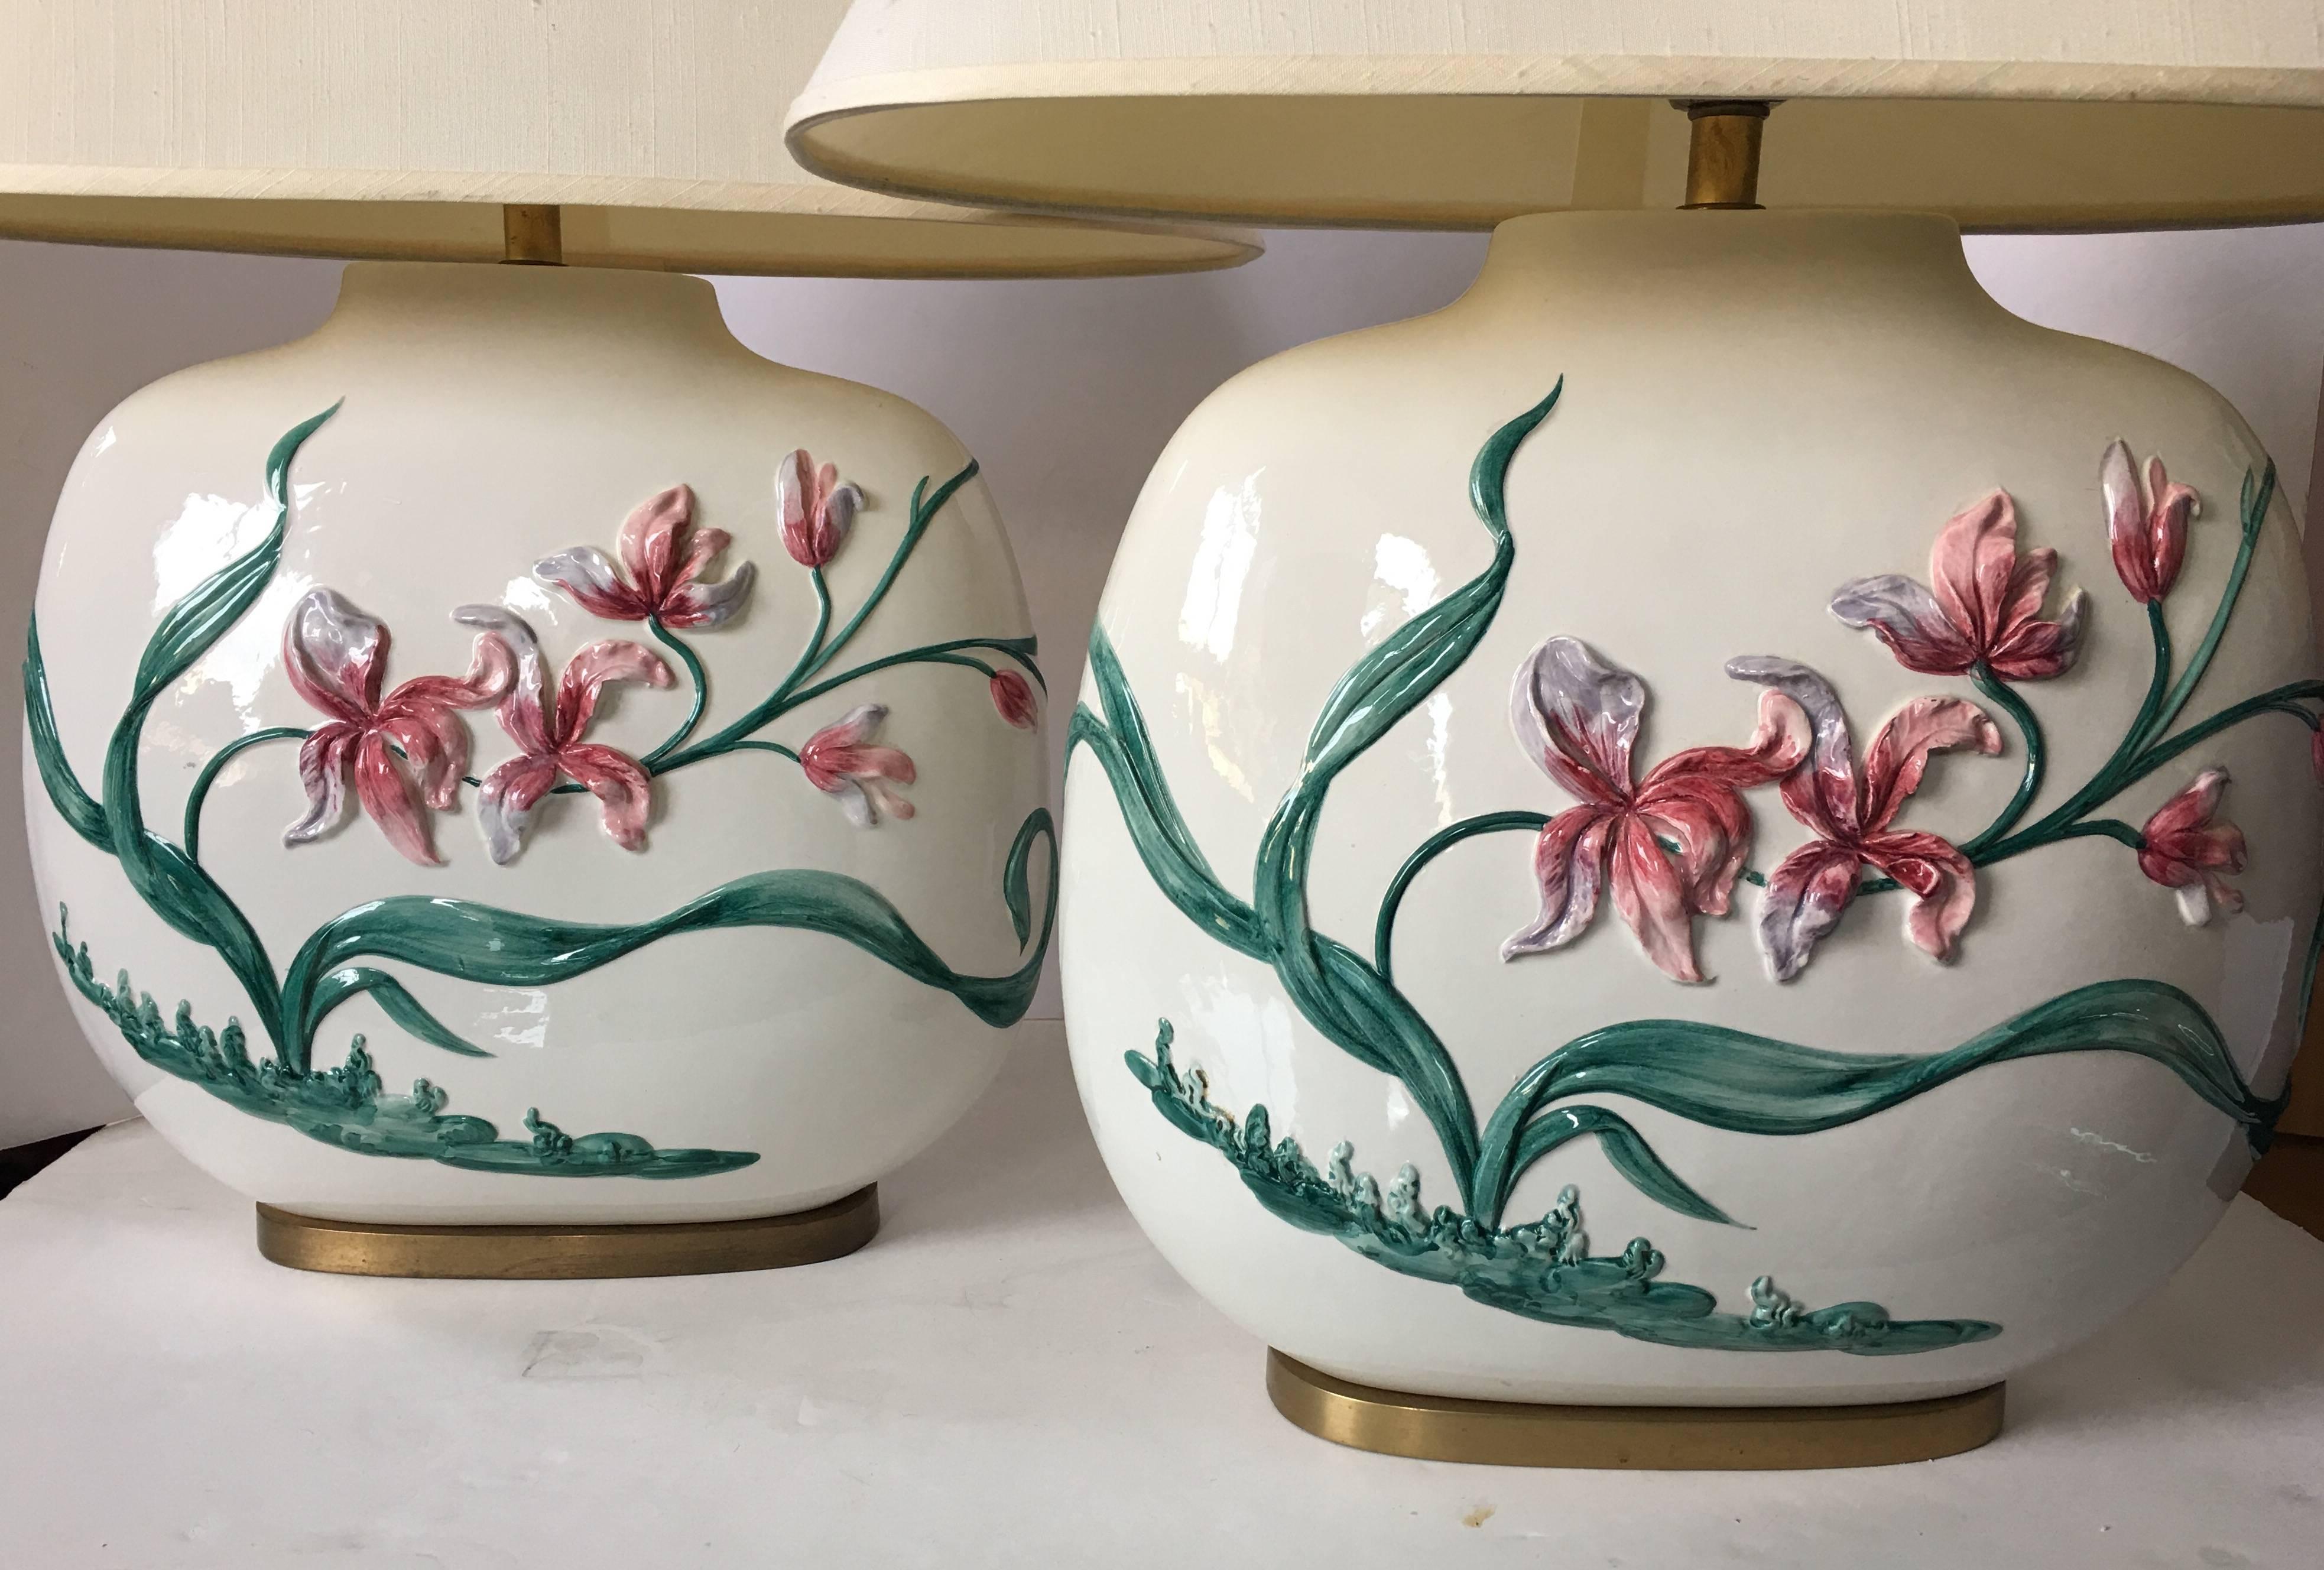 Belle paire de lampes de table de style chinoiserie, peintes à la main, à motif floral, par Chapman. Les corps ovales en céramique émaillée sont ornés d'un motif floral dimensionnel à double face et de bases en laiton. Abat-jour original de forme